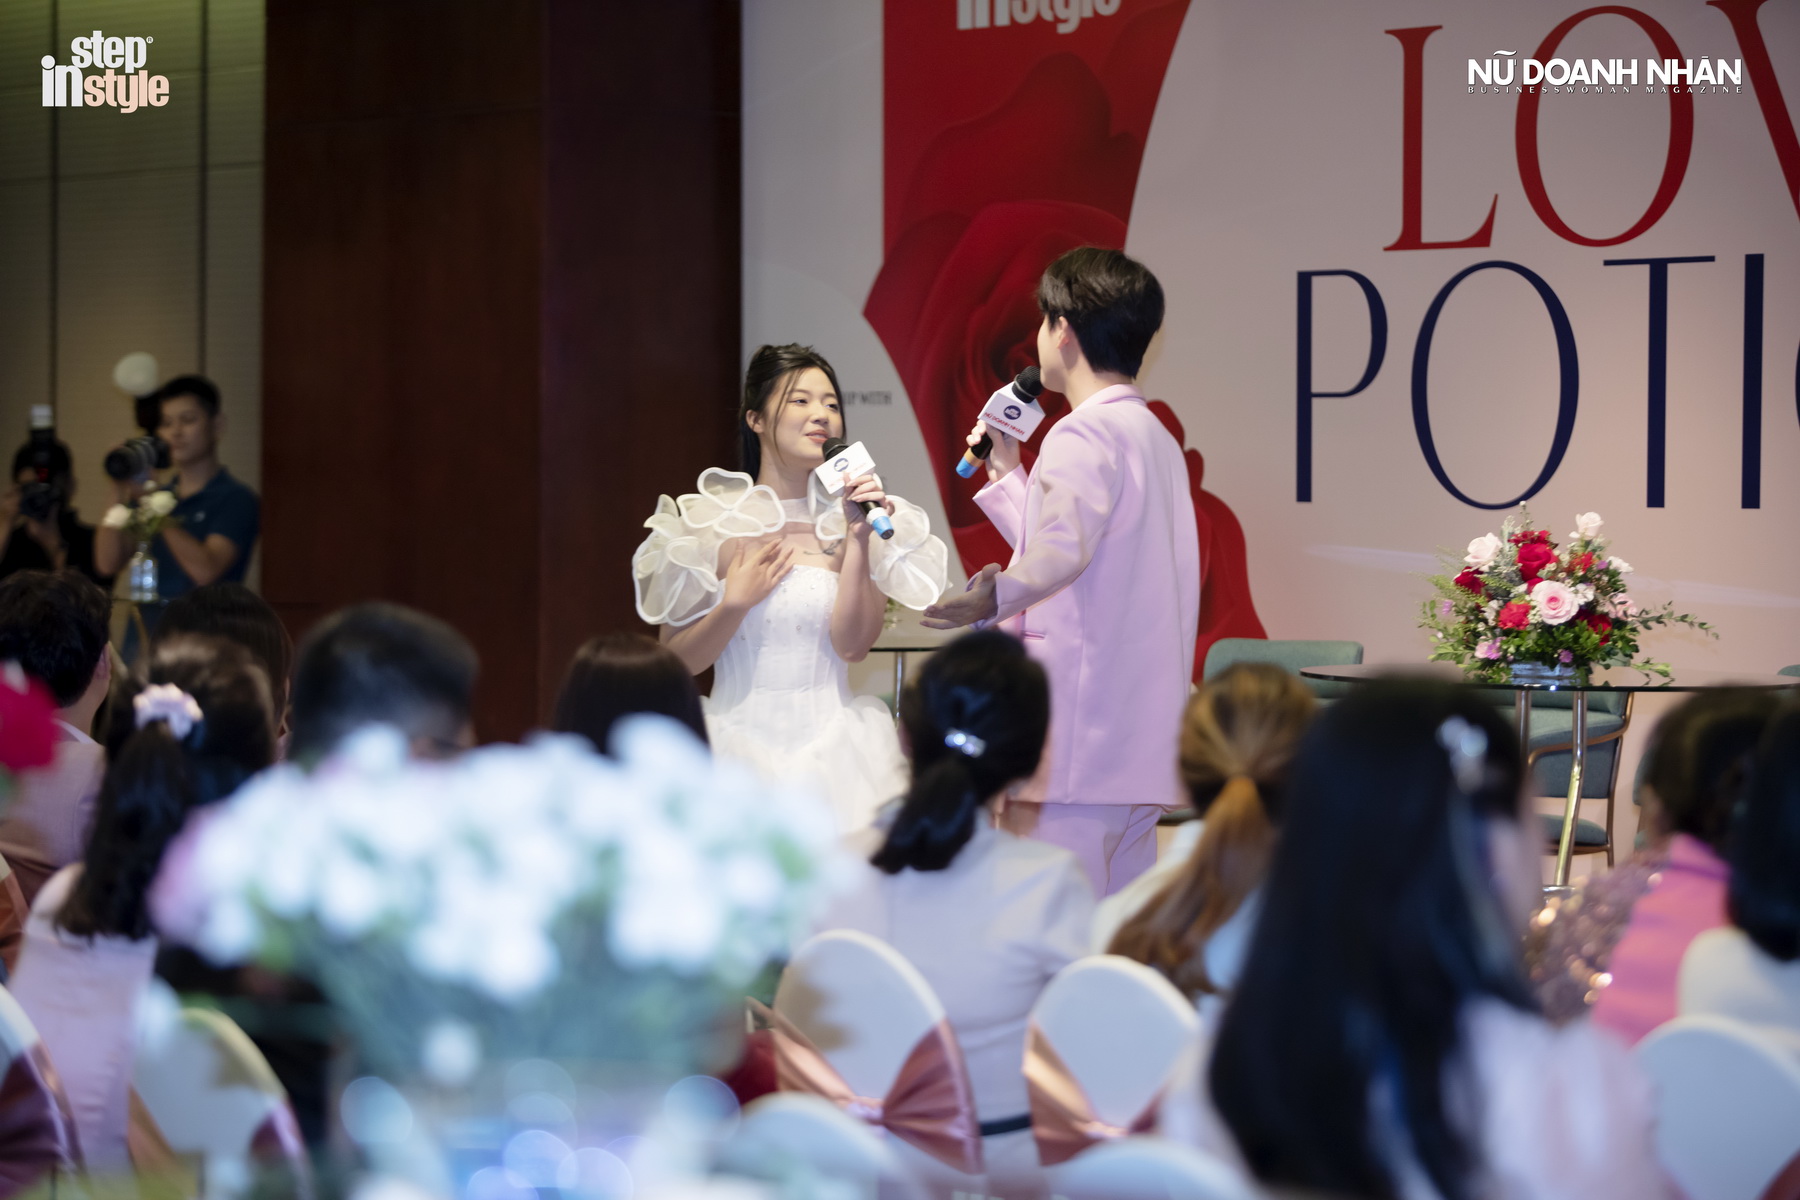 Fanny - Vũ Thịnh mở đầu workshop Love Potion với bài hát Cảm giác lạ khi hôn sâu 3 phút